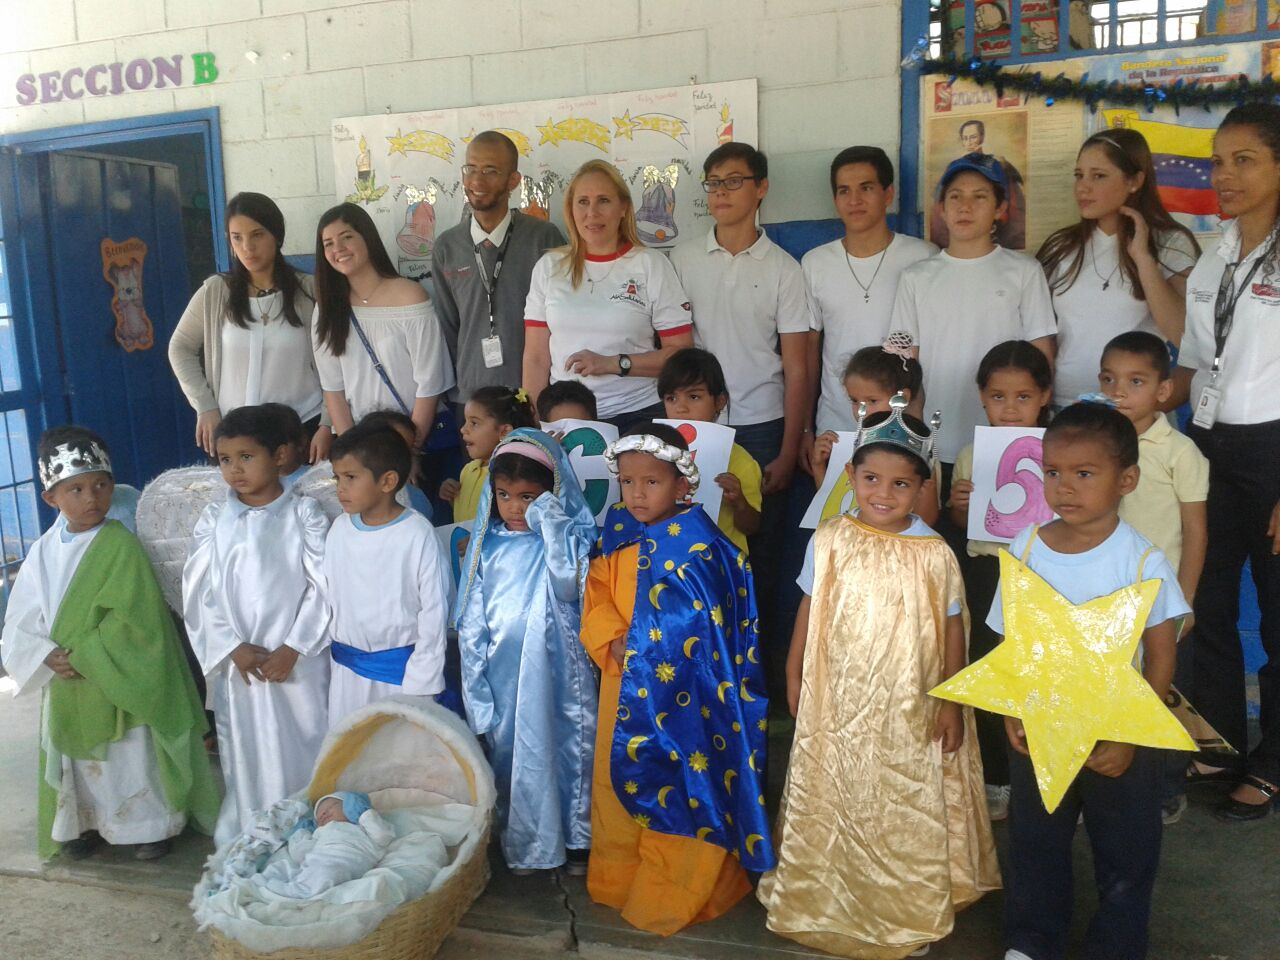 Aserca y SBA airlines alegraron la navidad de niños venezolanos